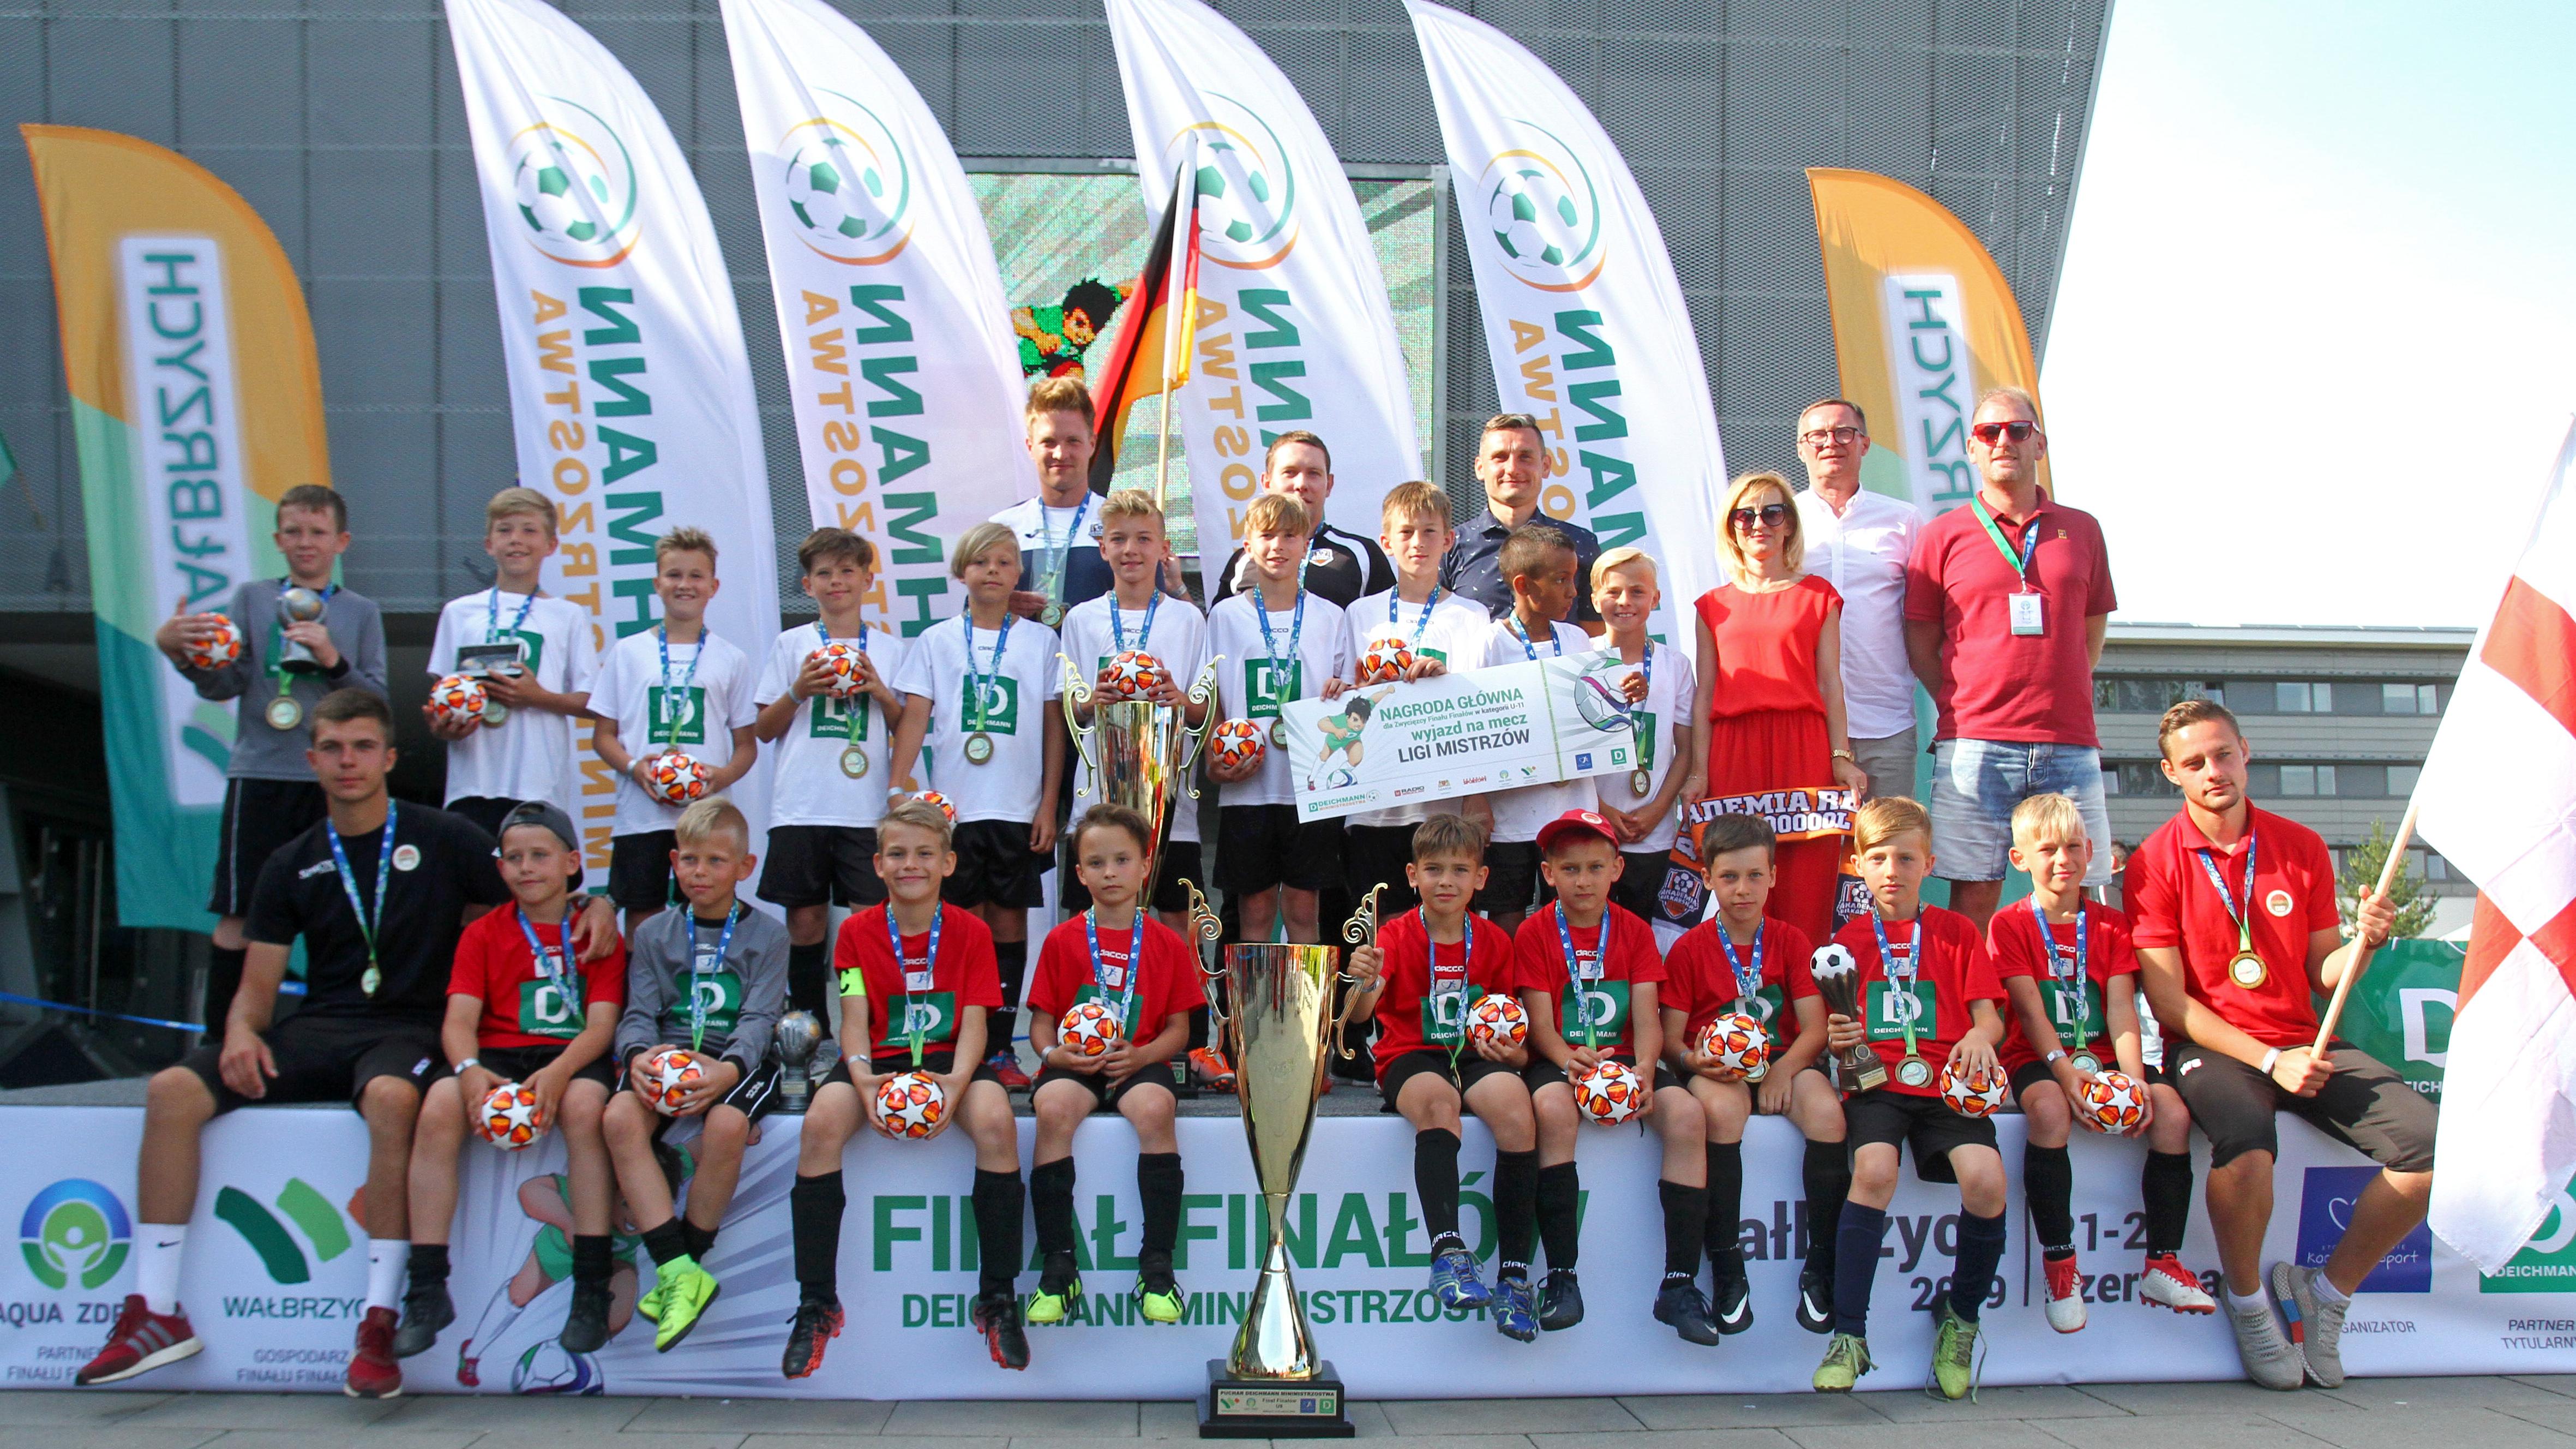 Anglia U-9 Wrocław i Niemcy U-11 Leszno najlepszymi drużynami w turnieju  Deichmann Minimistrzostwa 2019 - Junior